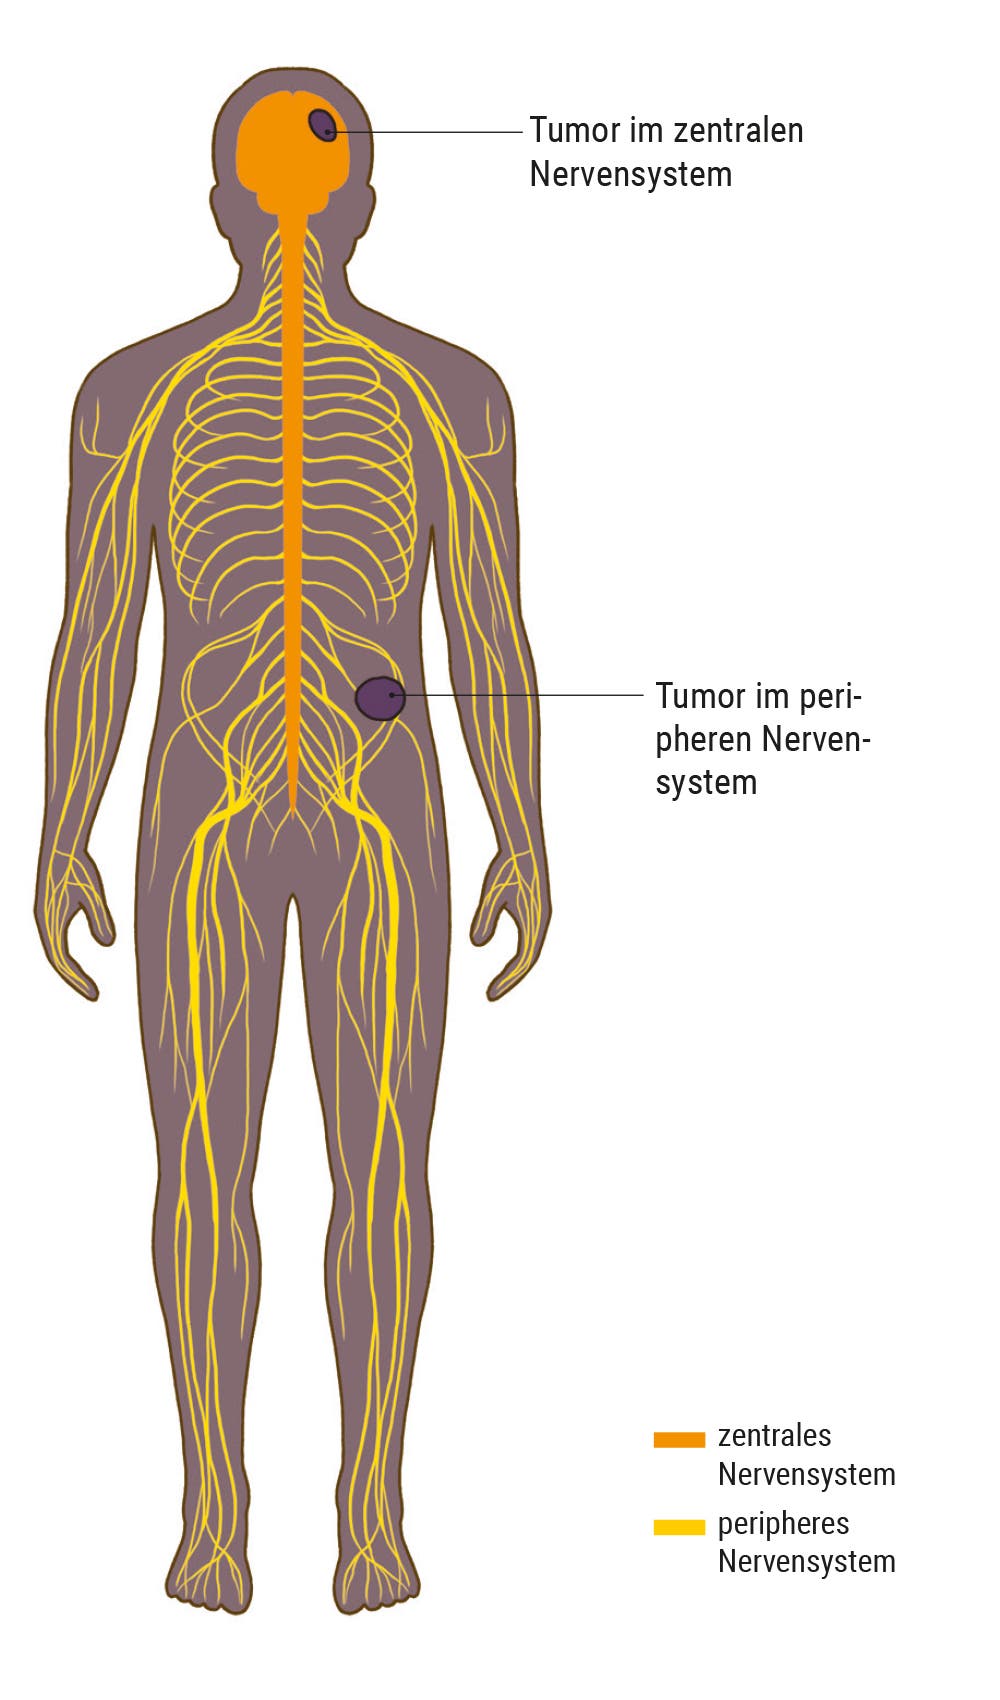 Darstellung des menschlichen Nervensystems mit Tumoren in zentralem und peripherem Nervensystem.